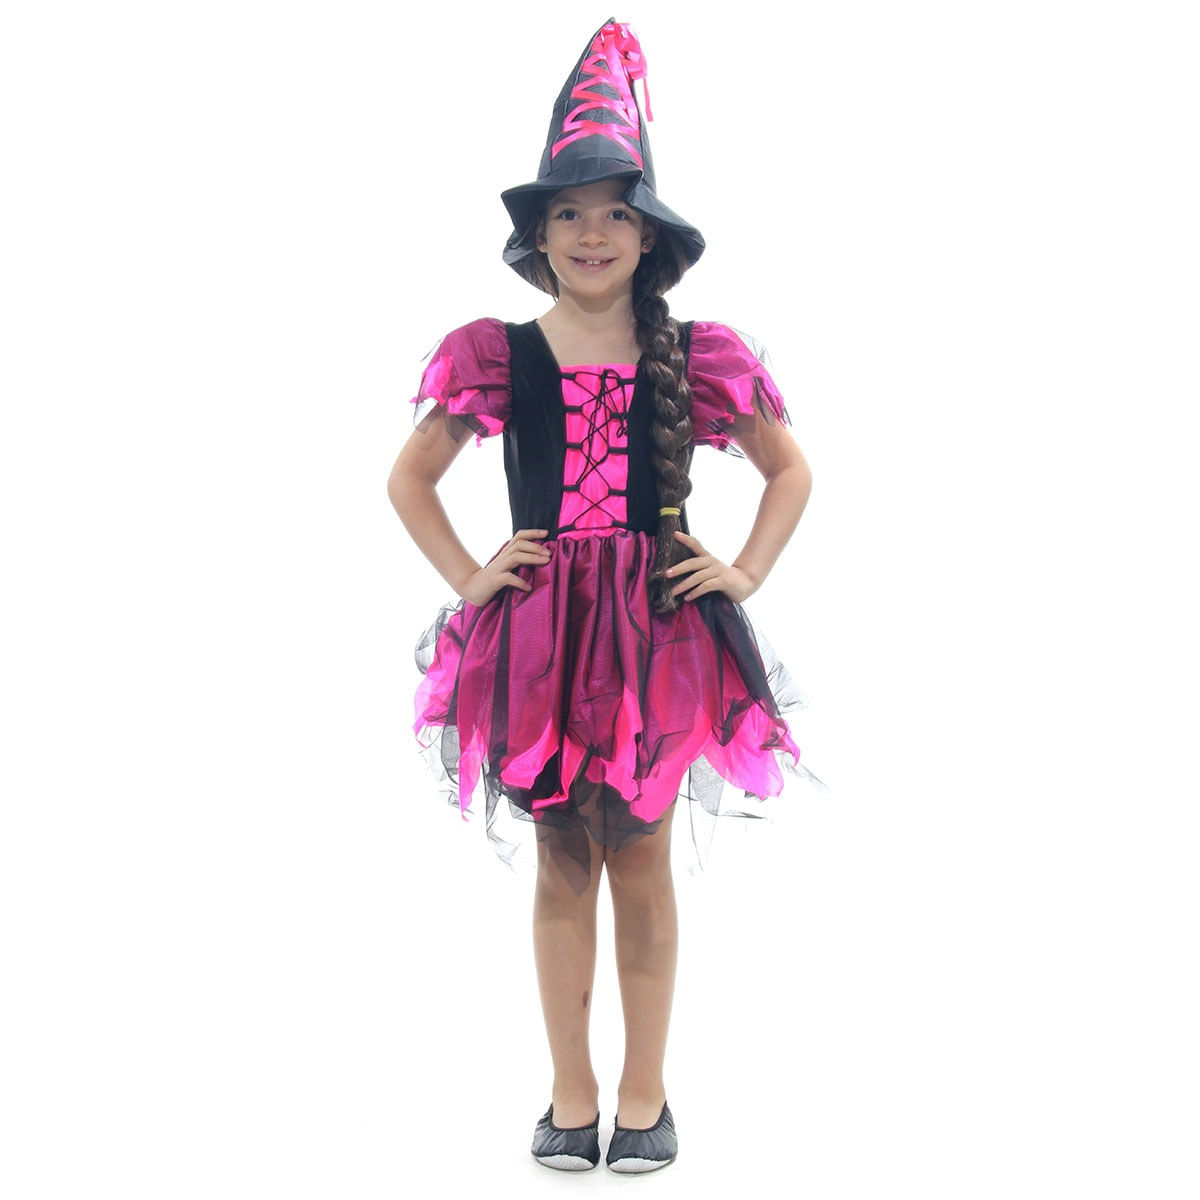 Fantasia De Halloween Infantil Menina Bruxa Preta Luxo